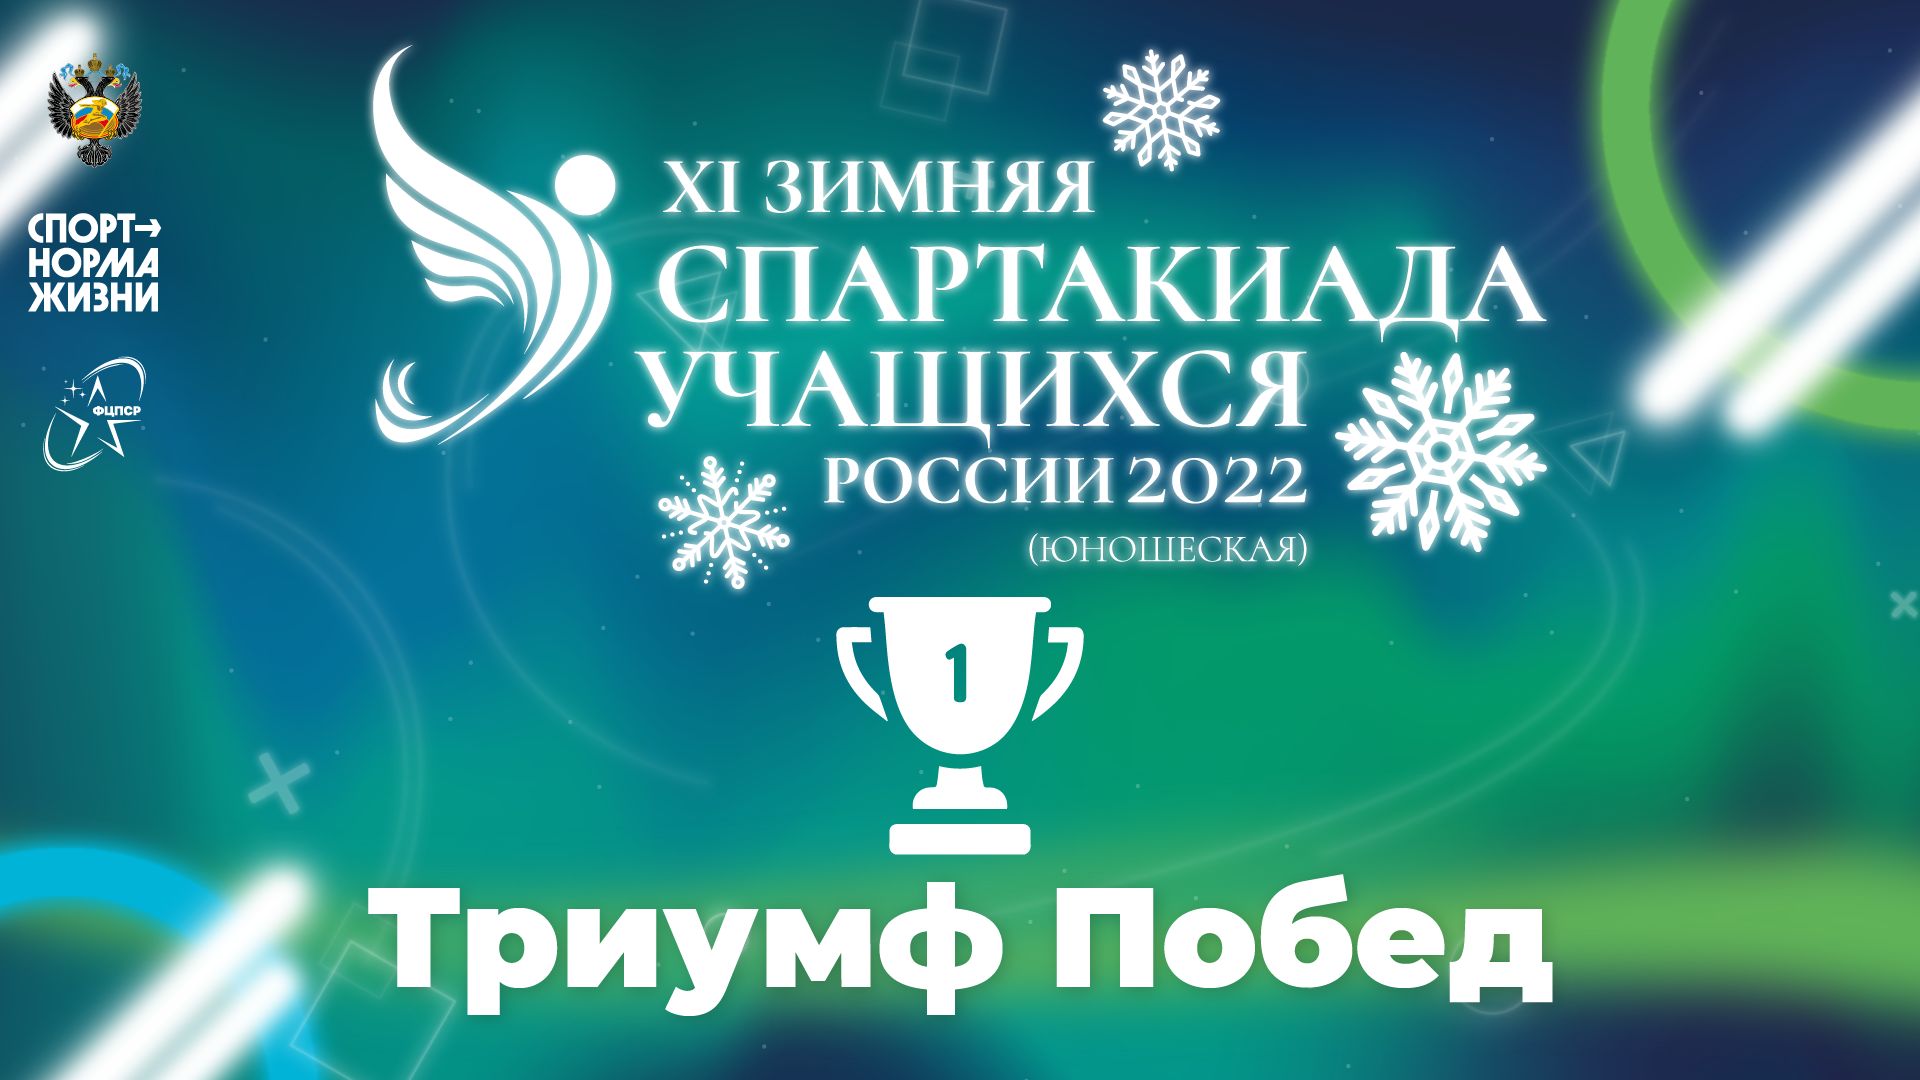 XI зимняя Спартакиада учащихся России 2022 года. Триумф побед